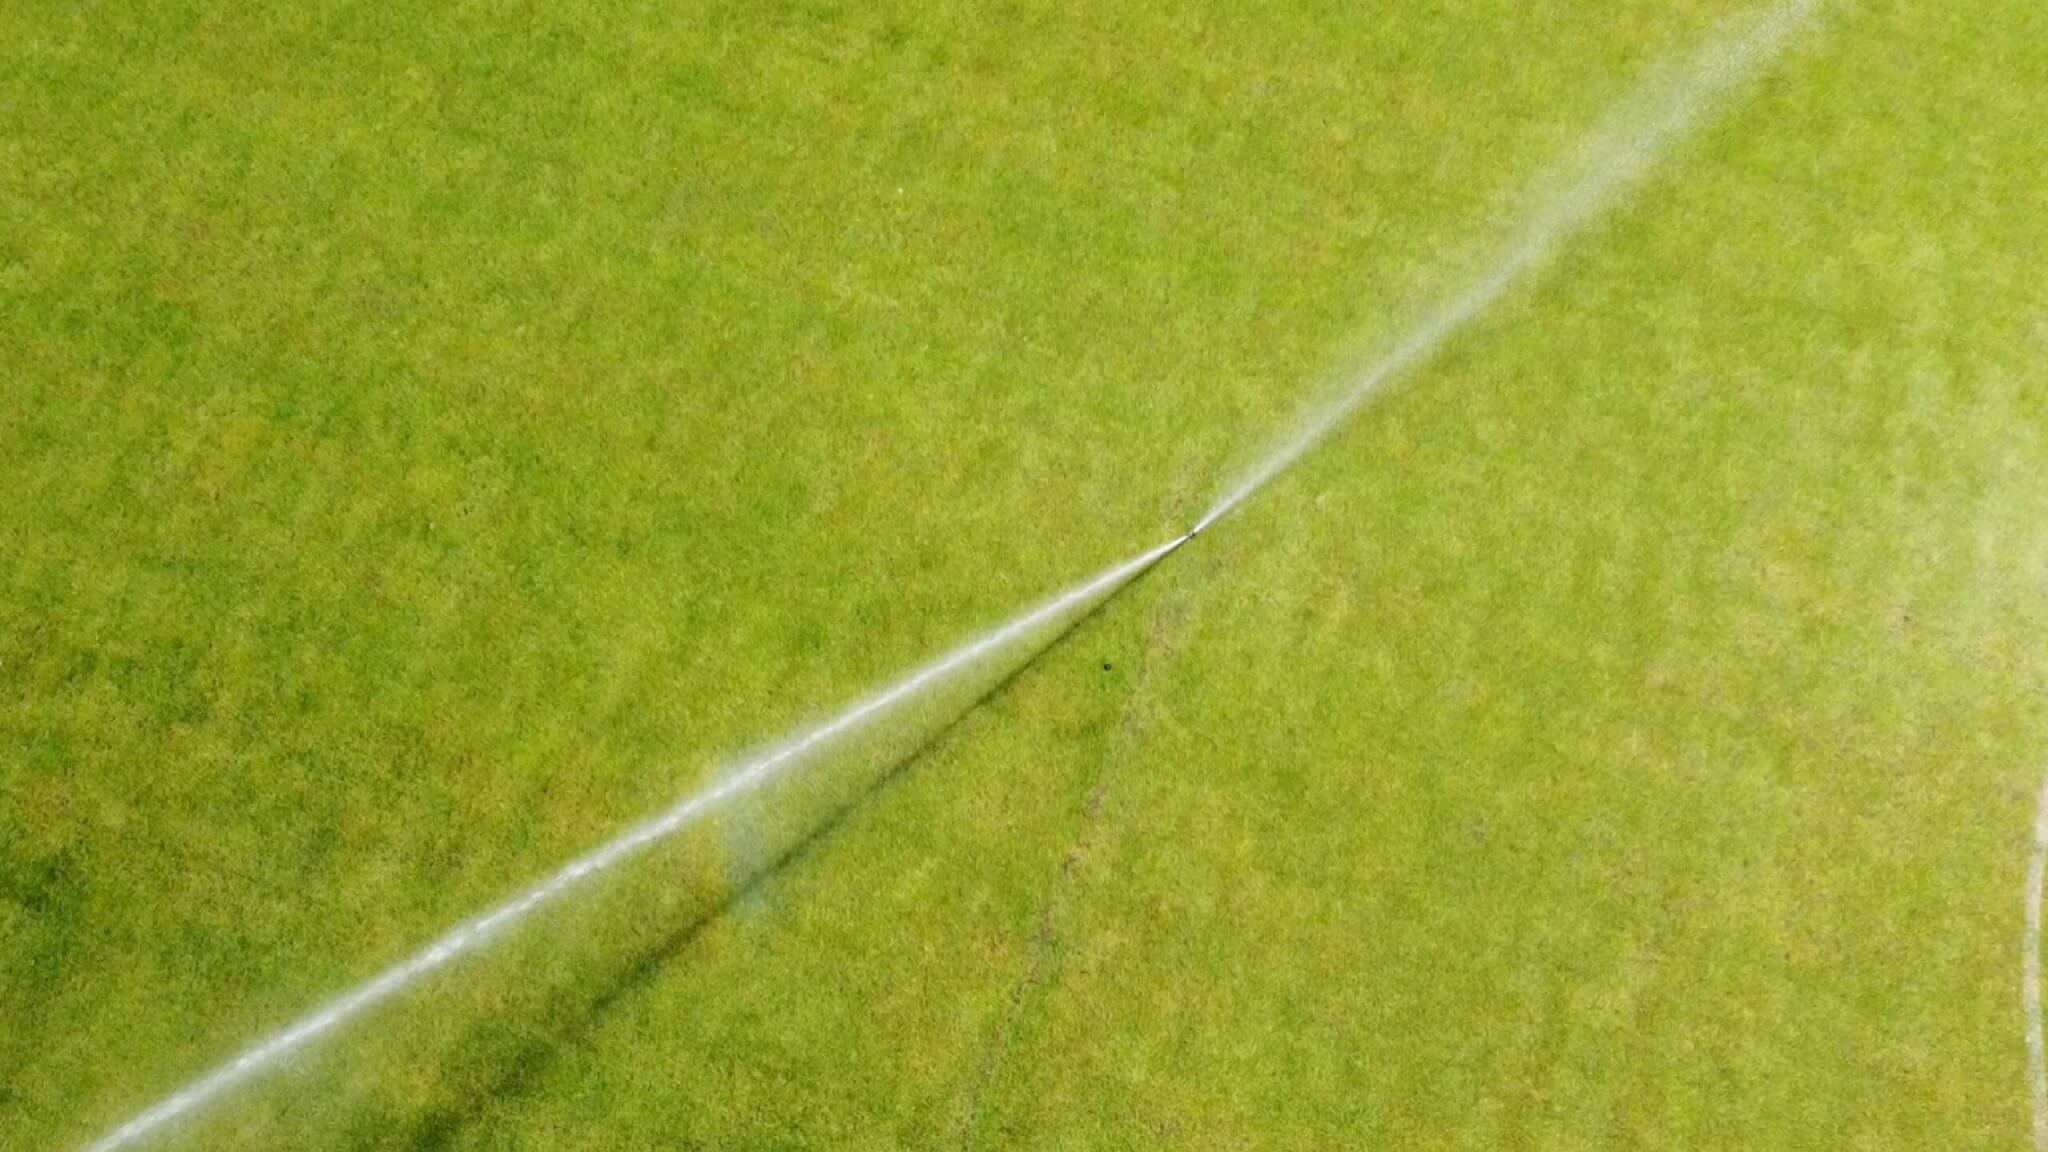 Irrigation sprinkler system